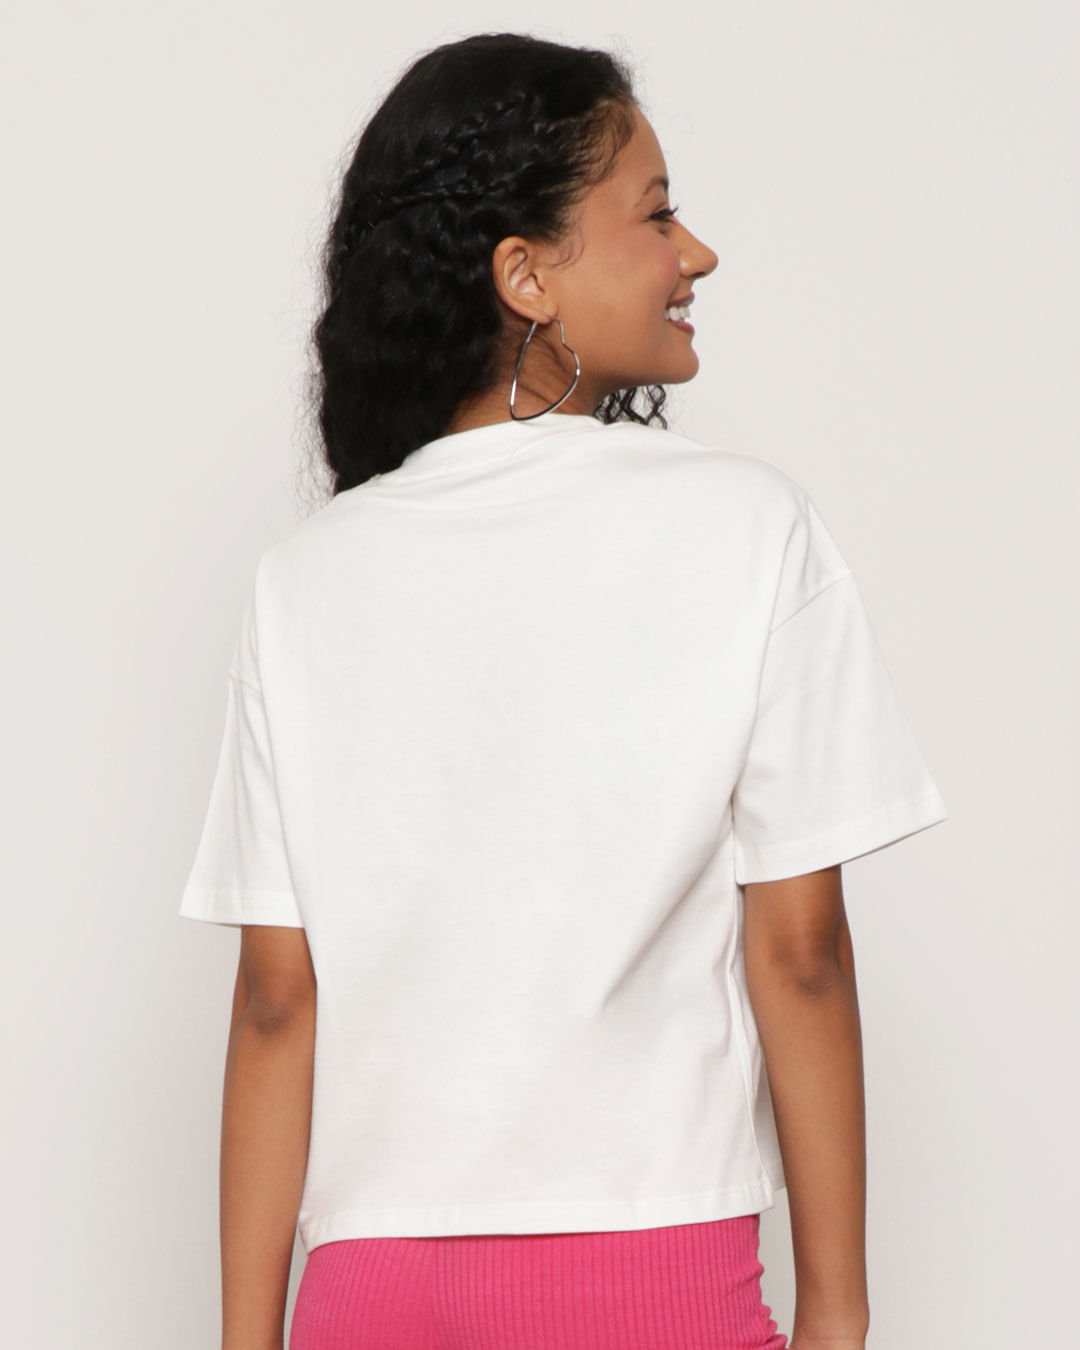 Camiseta-Feminina-Estampa-Manga-Curta-Off-White